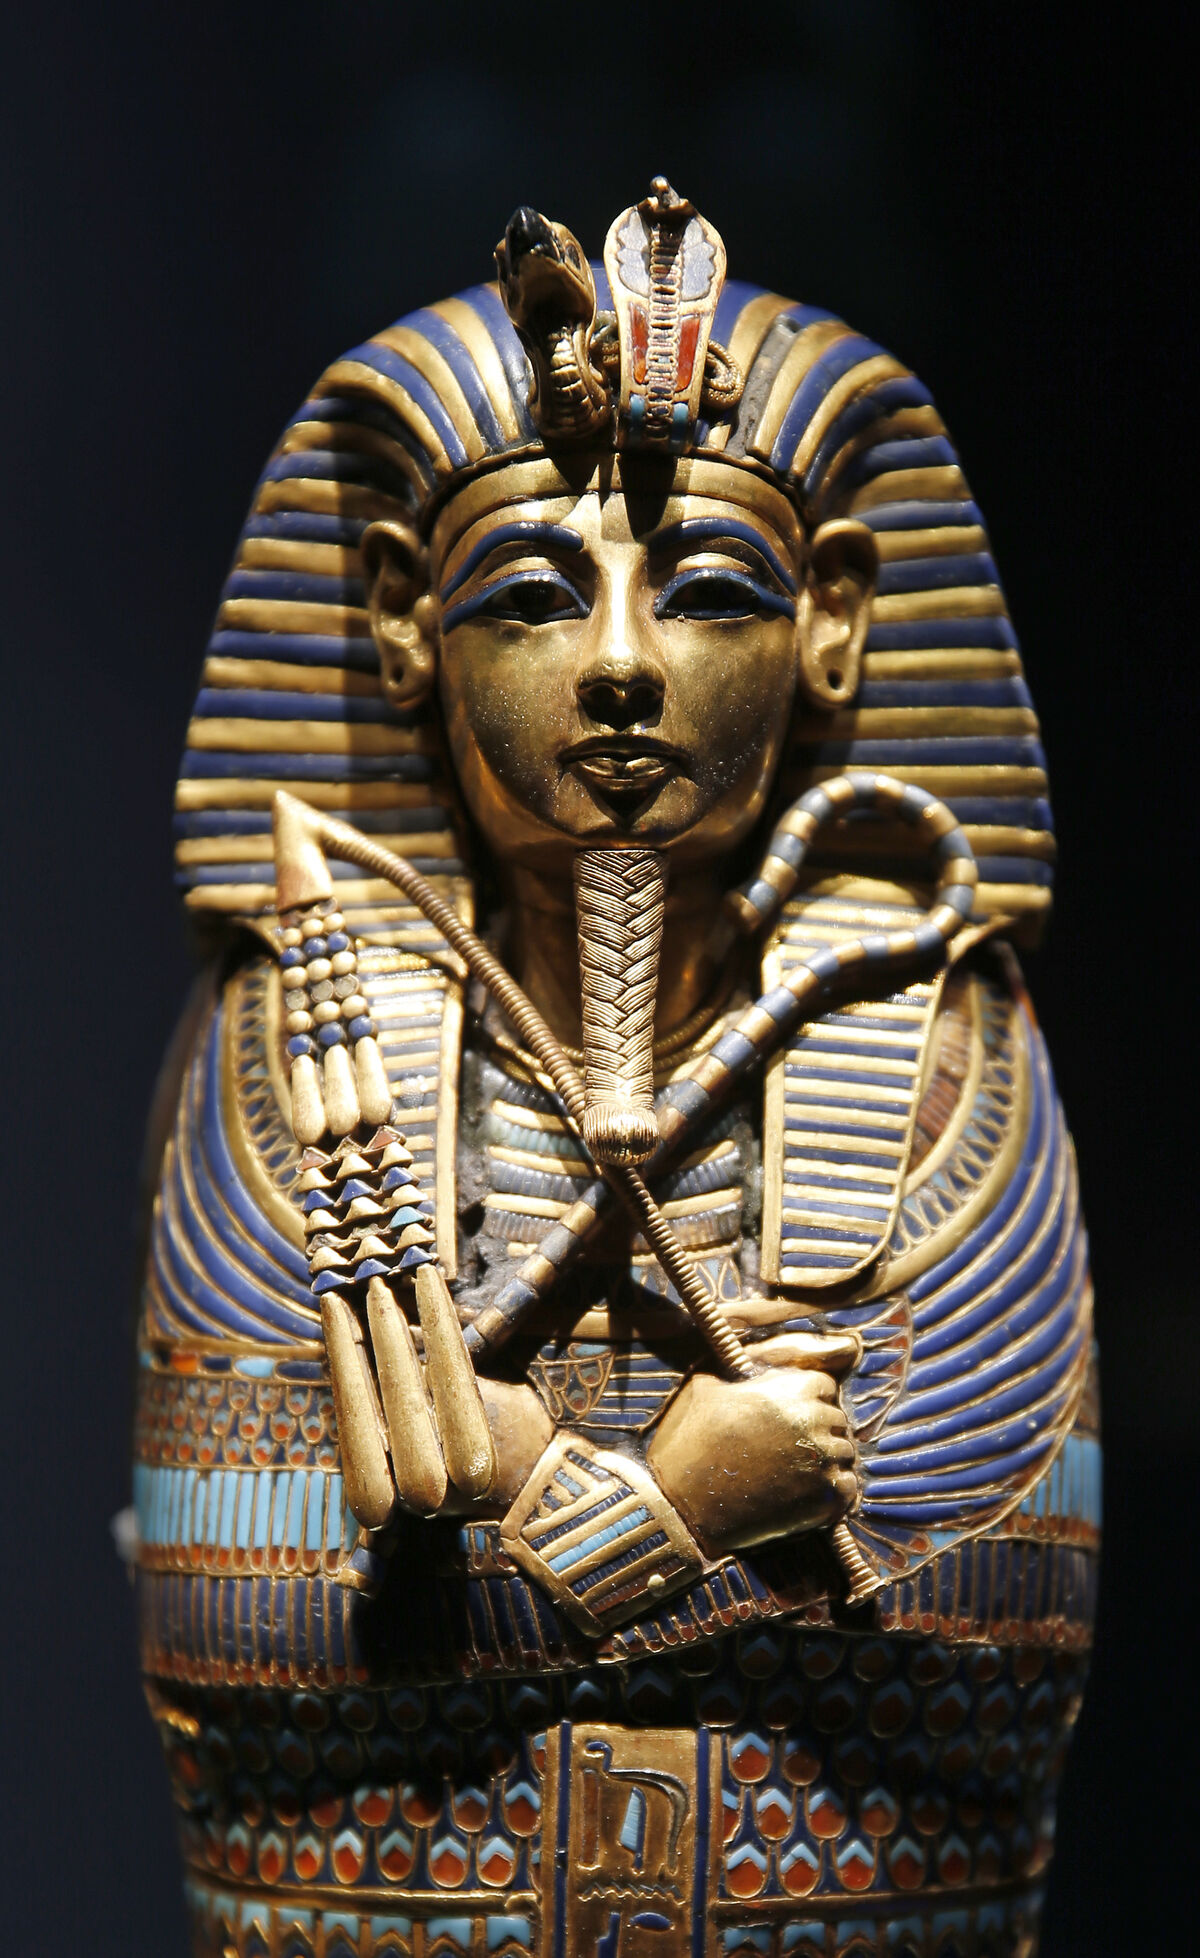 El ataúd de Tutankamón dedicado a Imseti e Isis se exhibe durante la exposición "Tutankamón: Tesoros del faraón dorado" que se celebró en el Gran Halle de La Villette.  Foto de Chesnot / Getty Images.